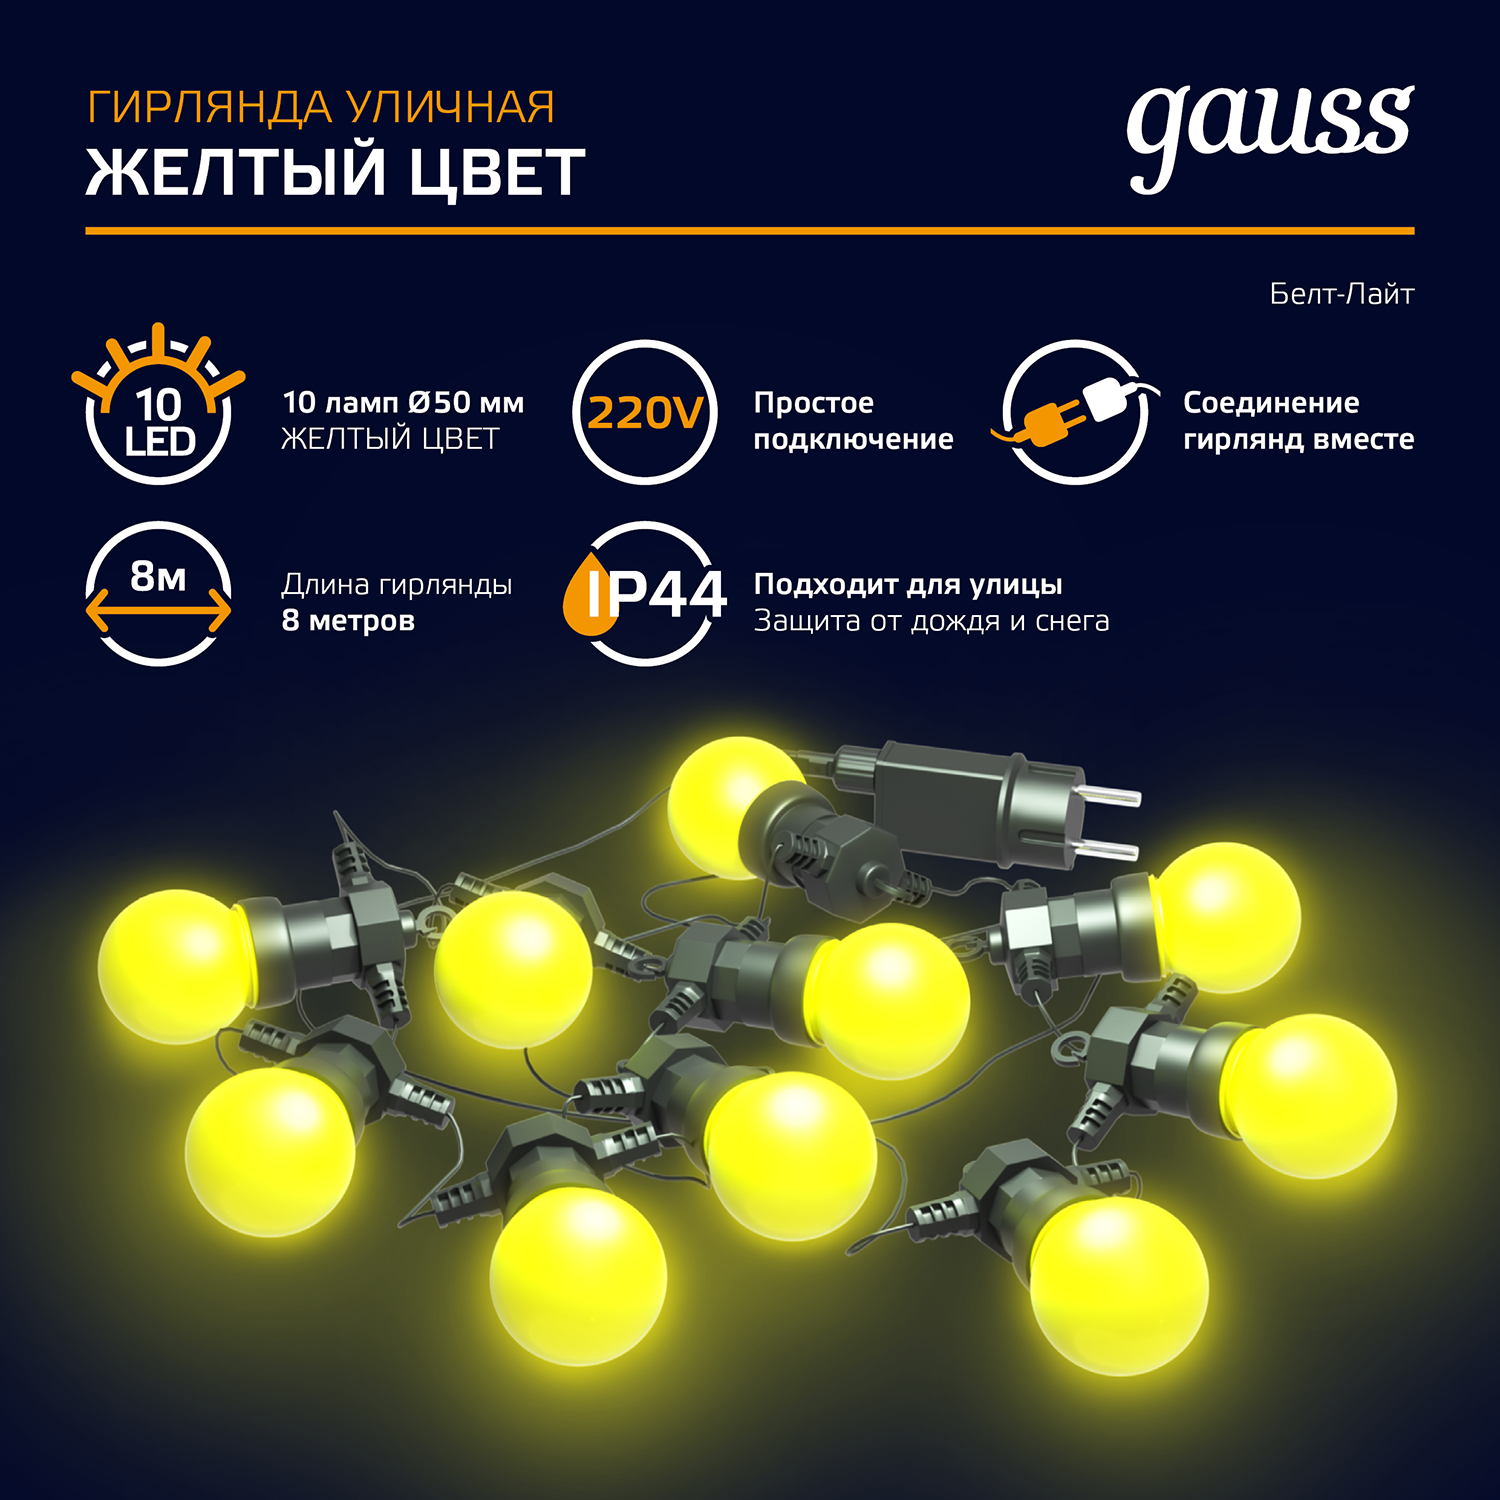 Гирлянда "Gauss Holiday" 10 мини-ламп, 7 метров, желтый цвет